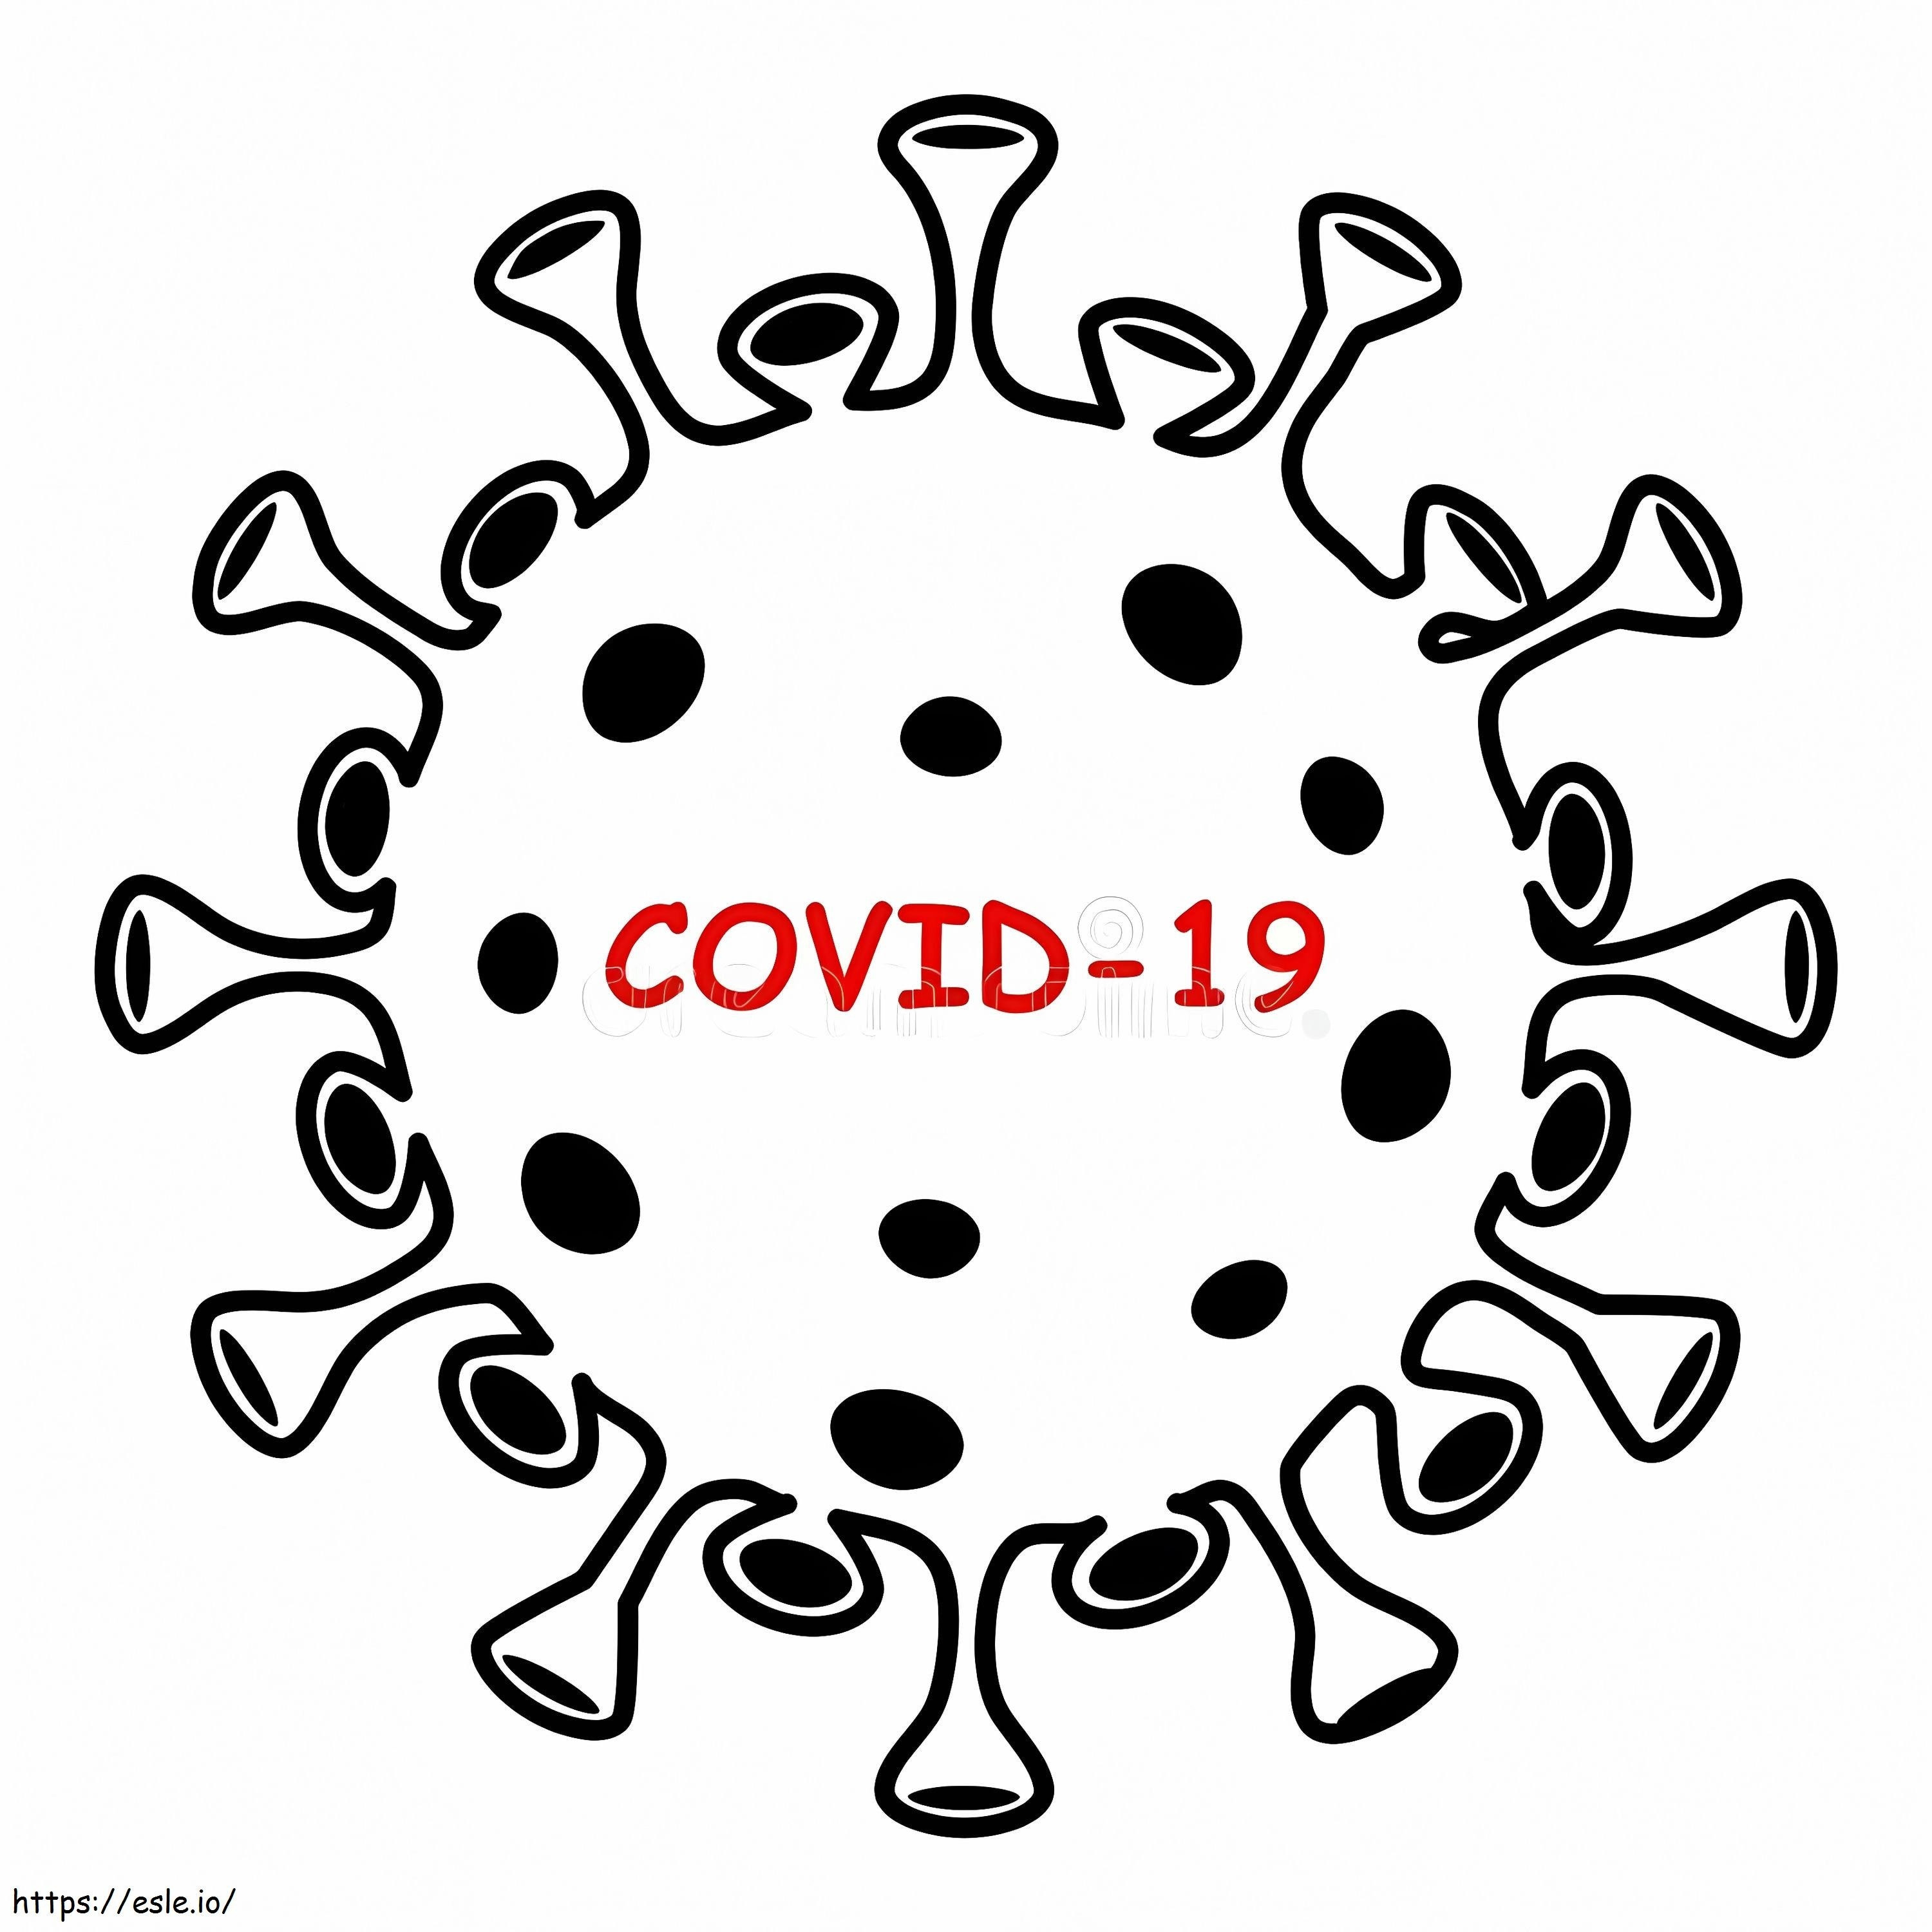 1587632013 Coronavírus Covid Ícone Sinal Preto Vírus Fundo Branco Isolado China Patógeno Infecção Respiratória Surto de Gripe Asiática 175552515 para colorir